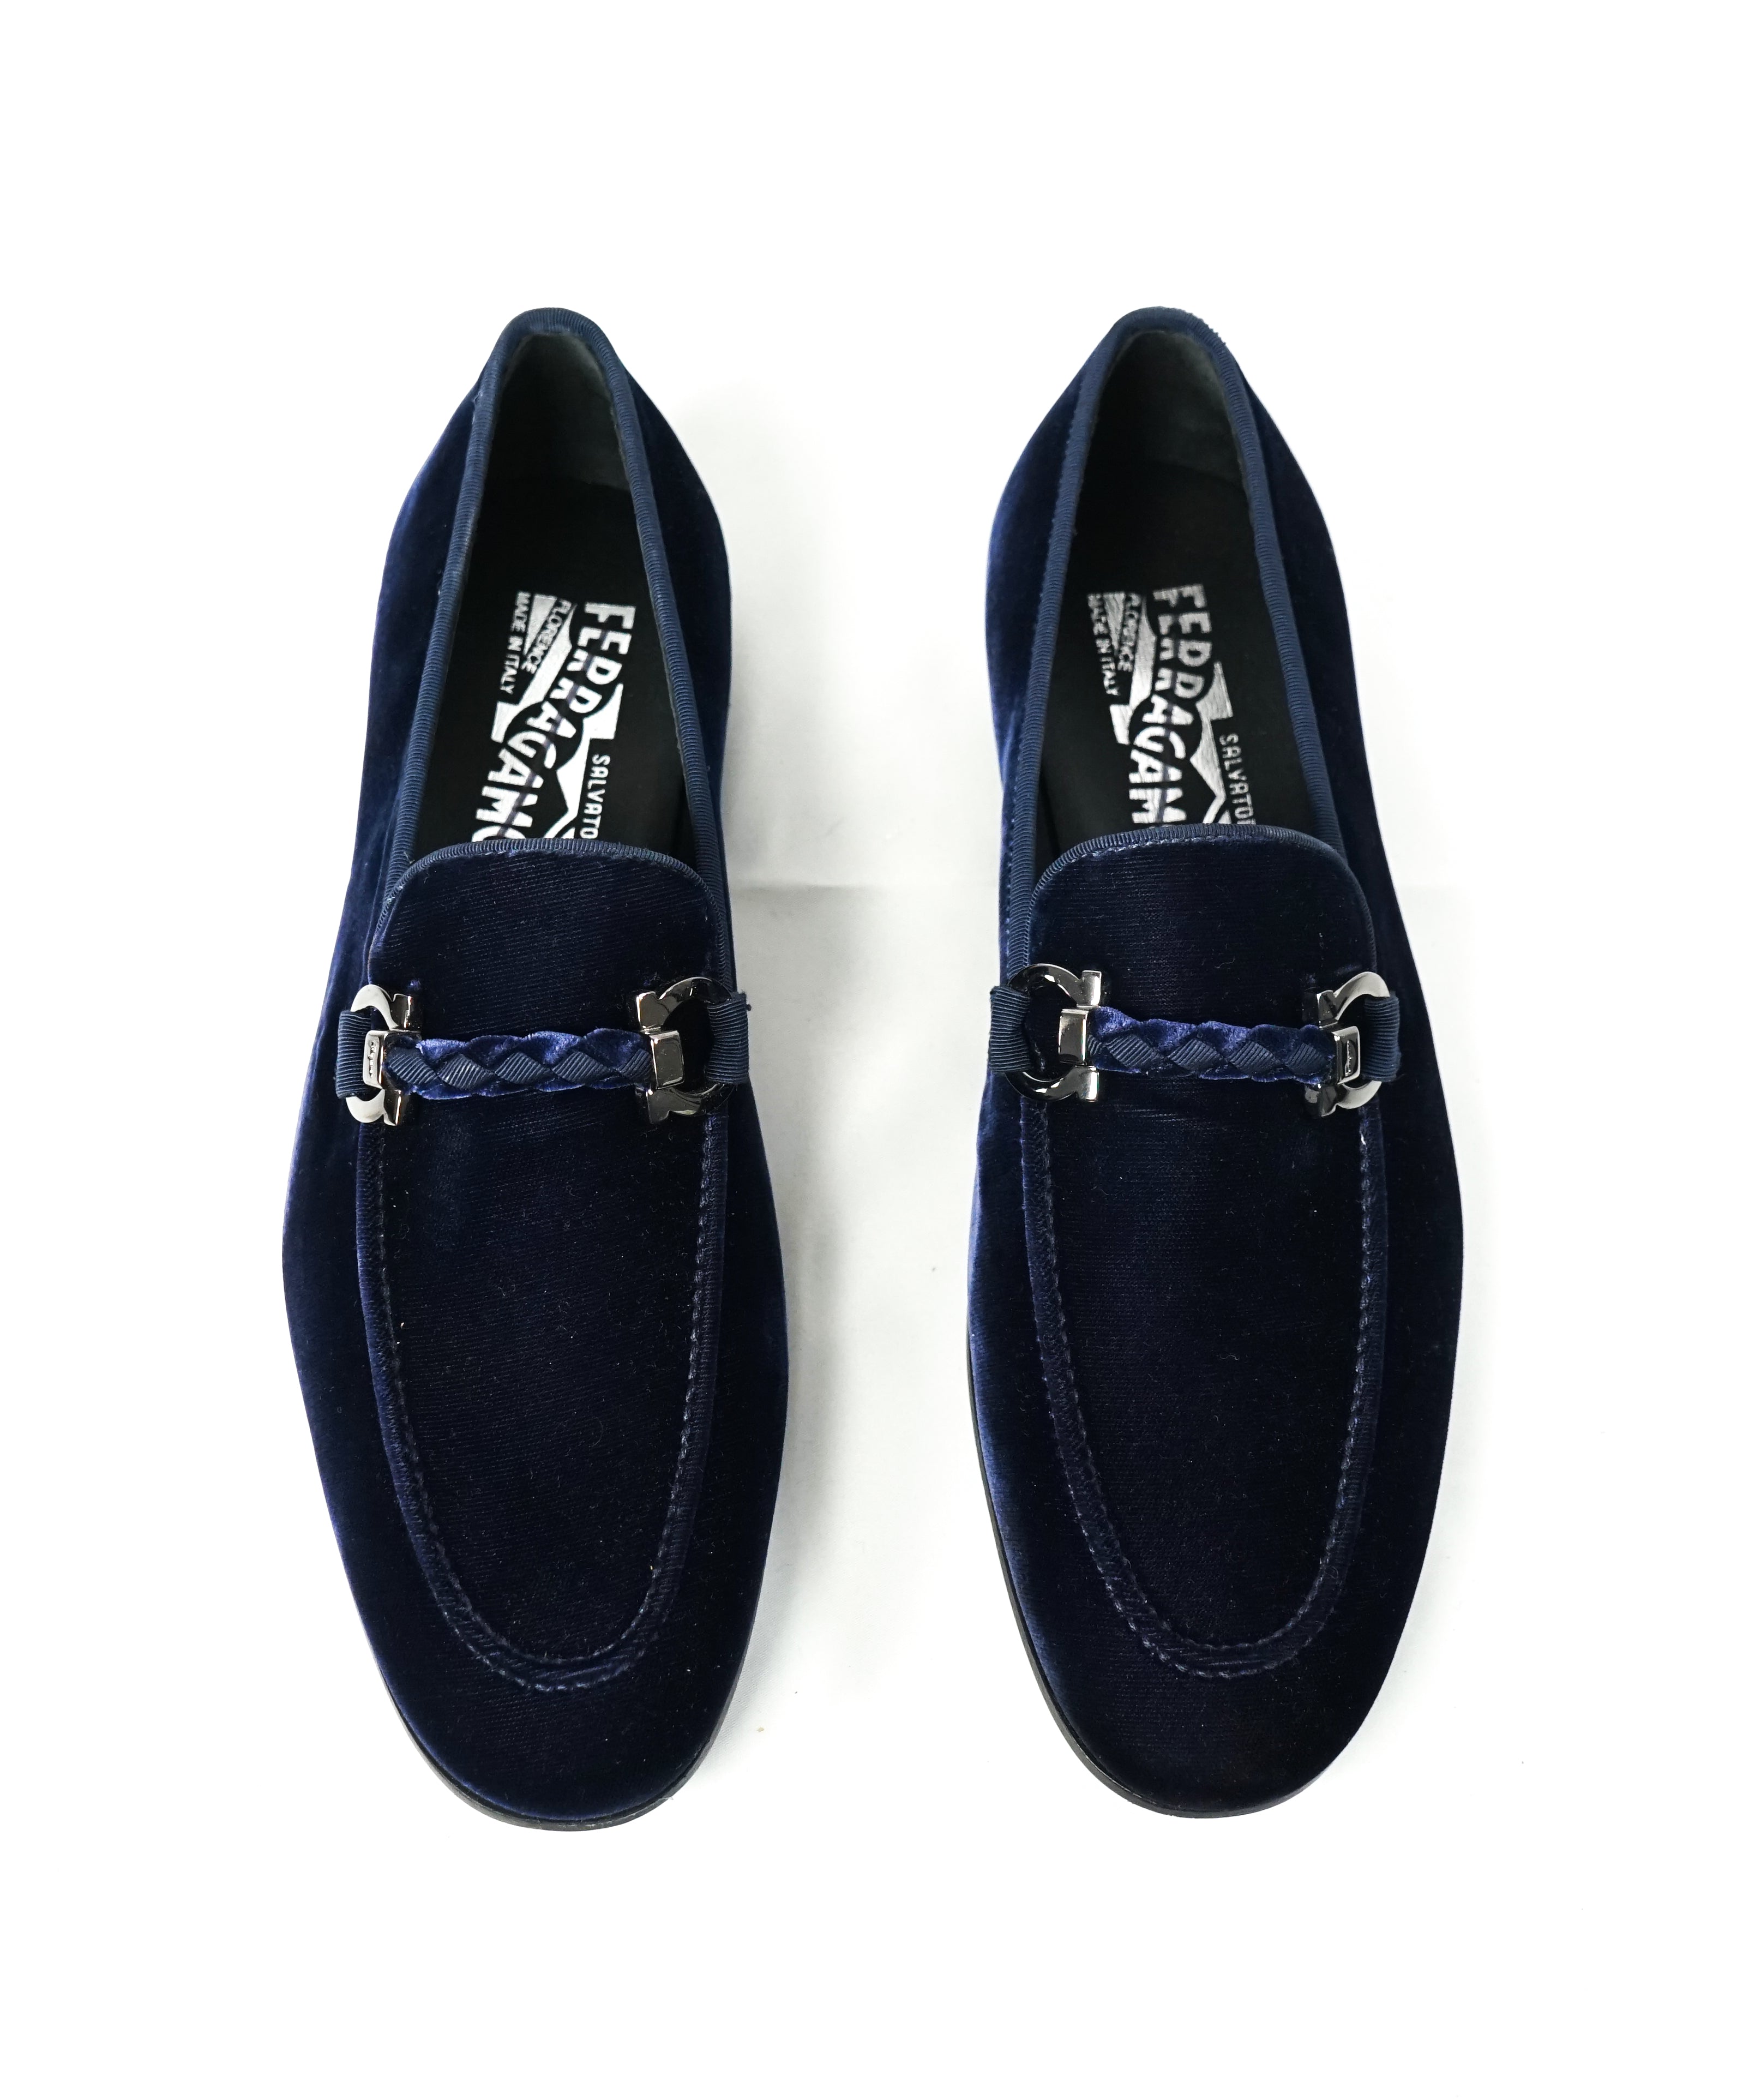 blue velvet loafer